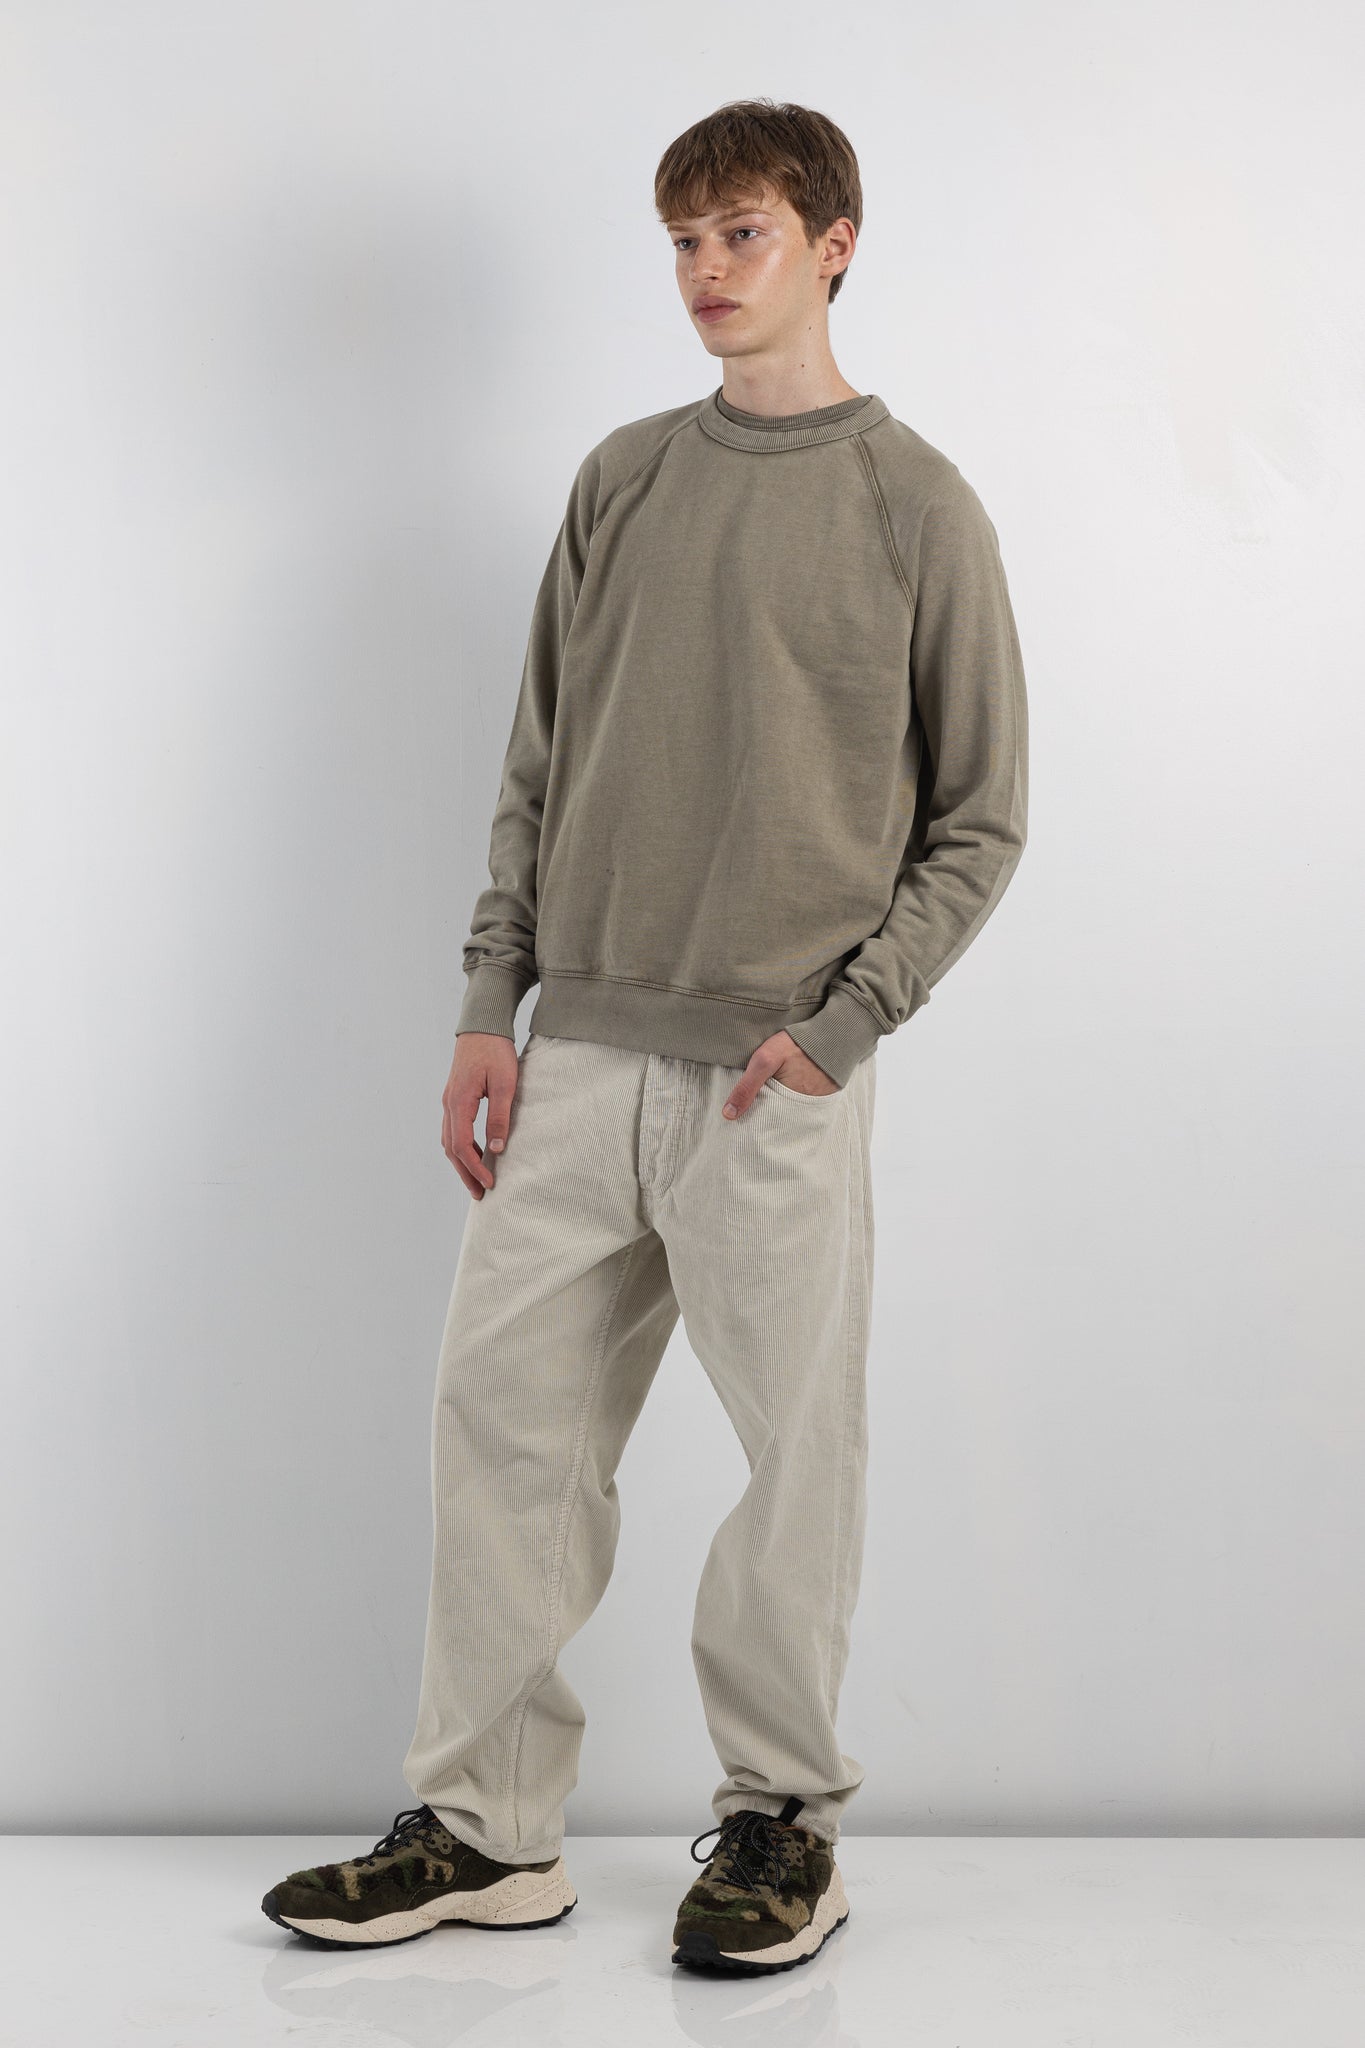 mens sweatshirt | YMC schrank sweatshirt | The Standard Store